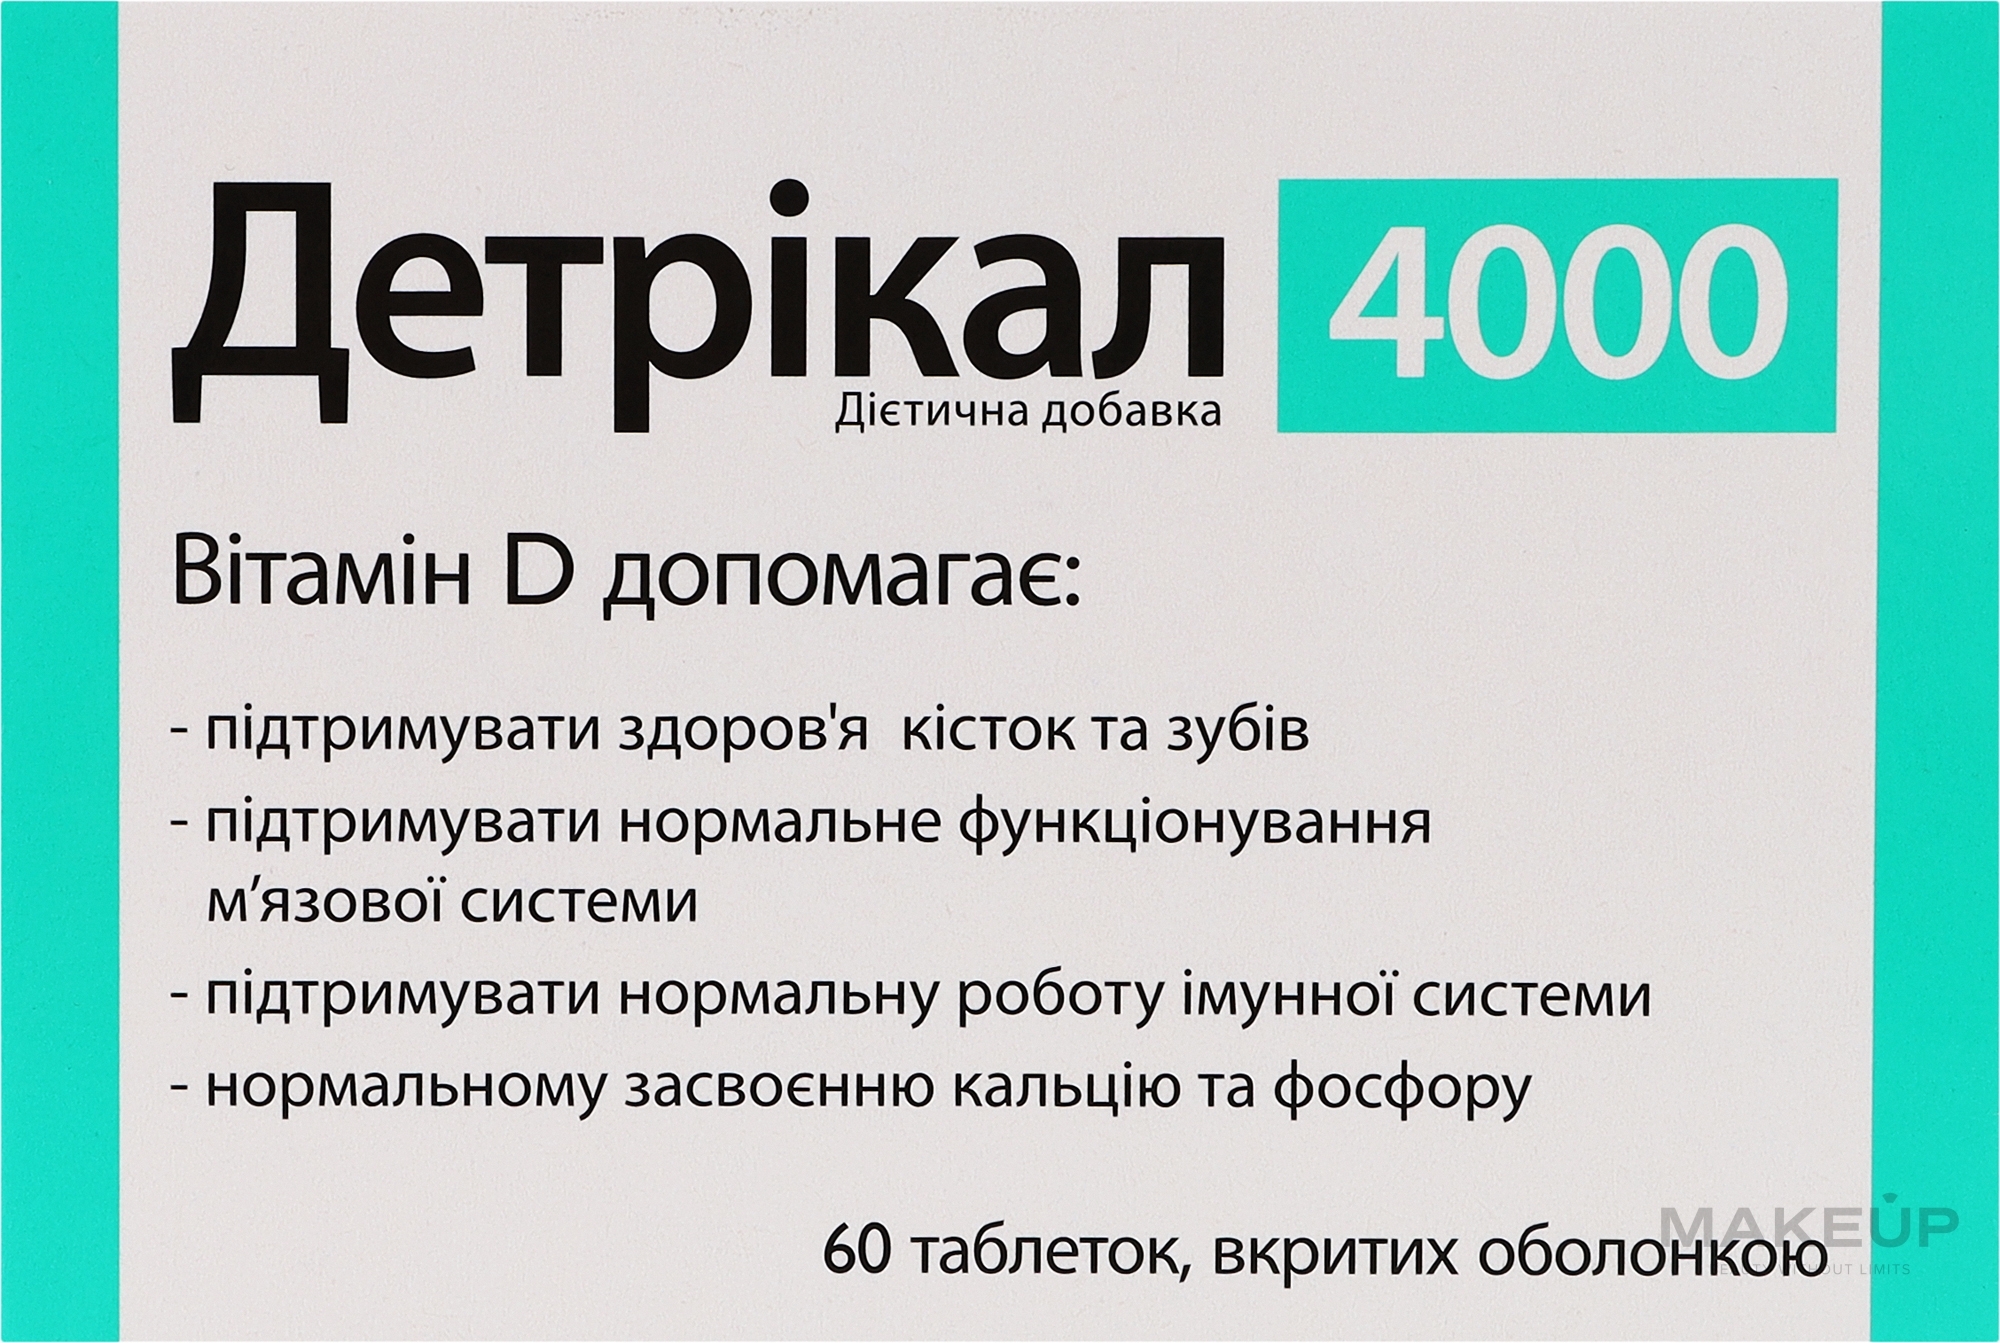 Дієтична добавка "Вітамін D" - Zdrovit Detrical 4000 — фото 60шт